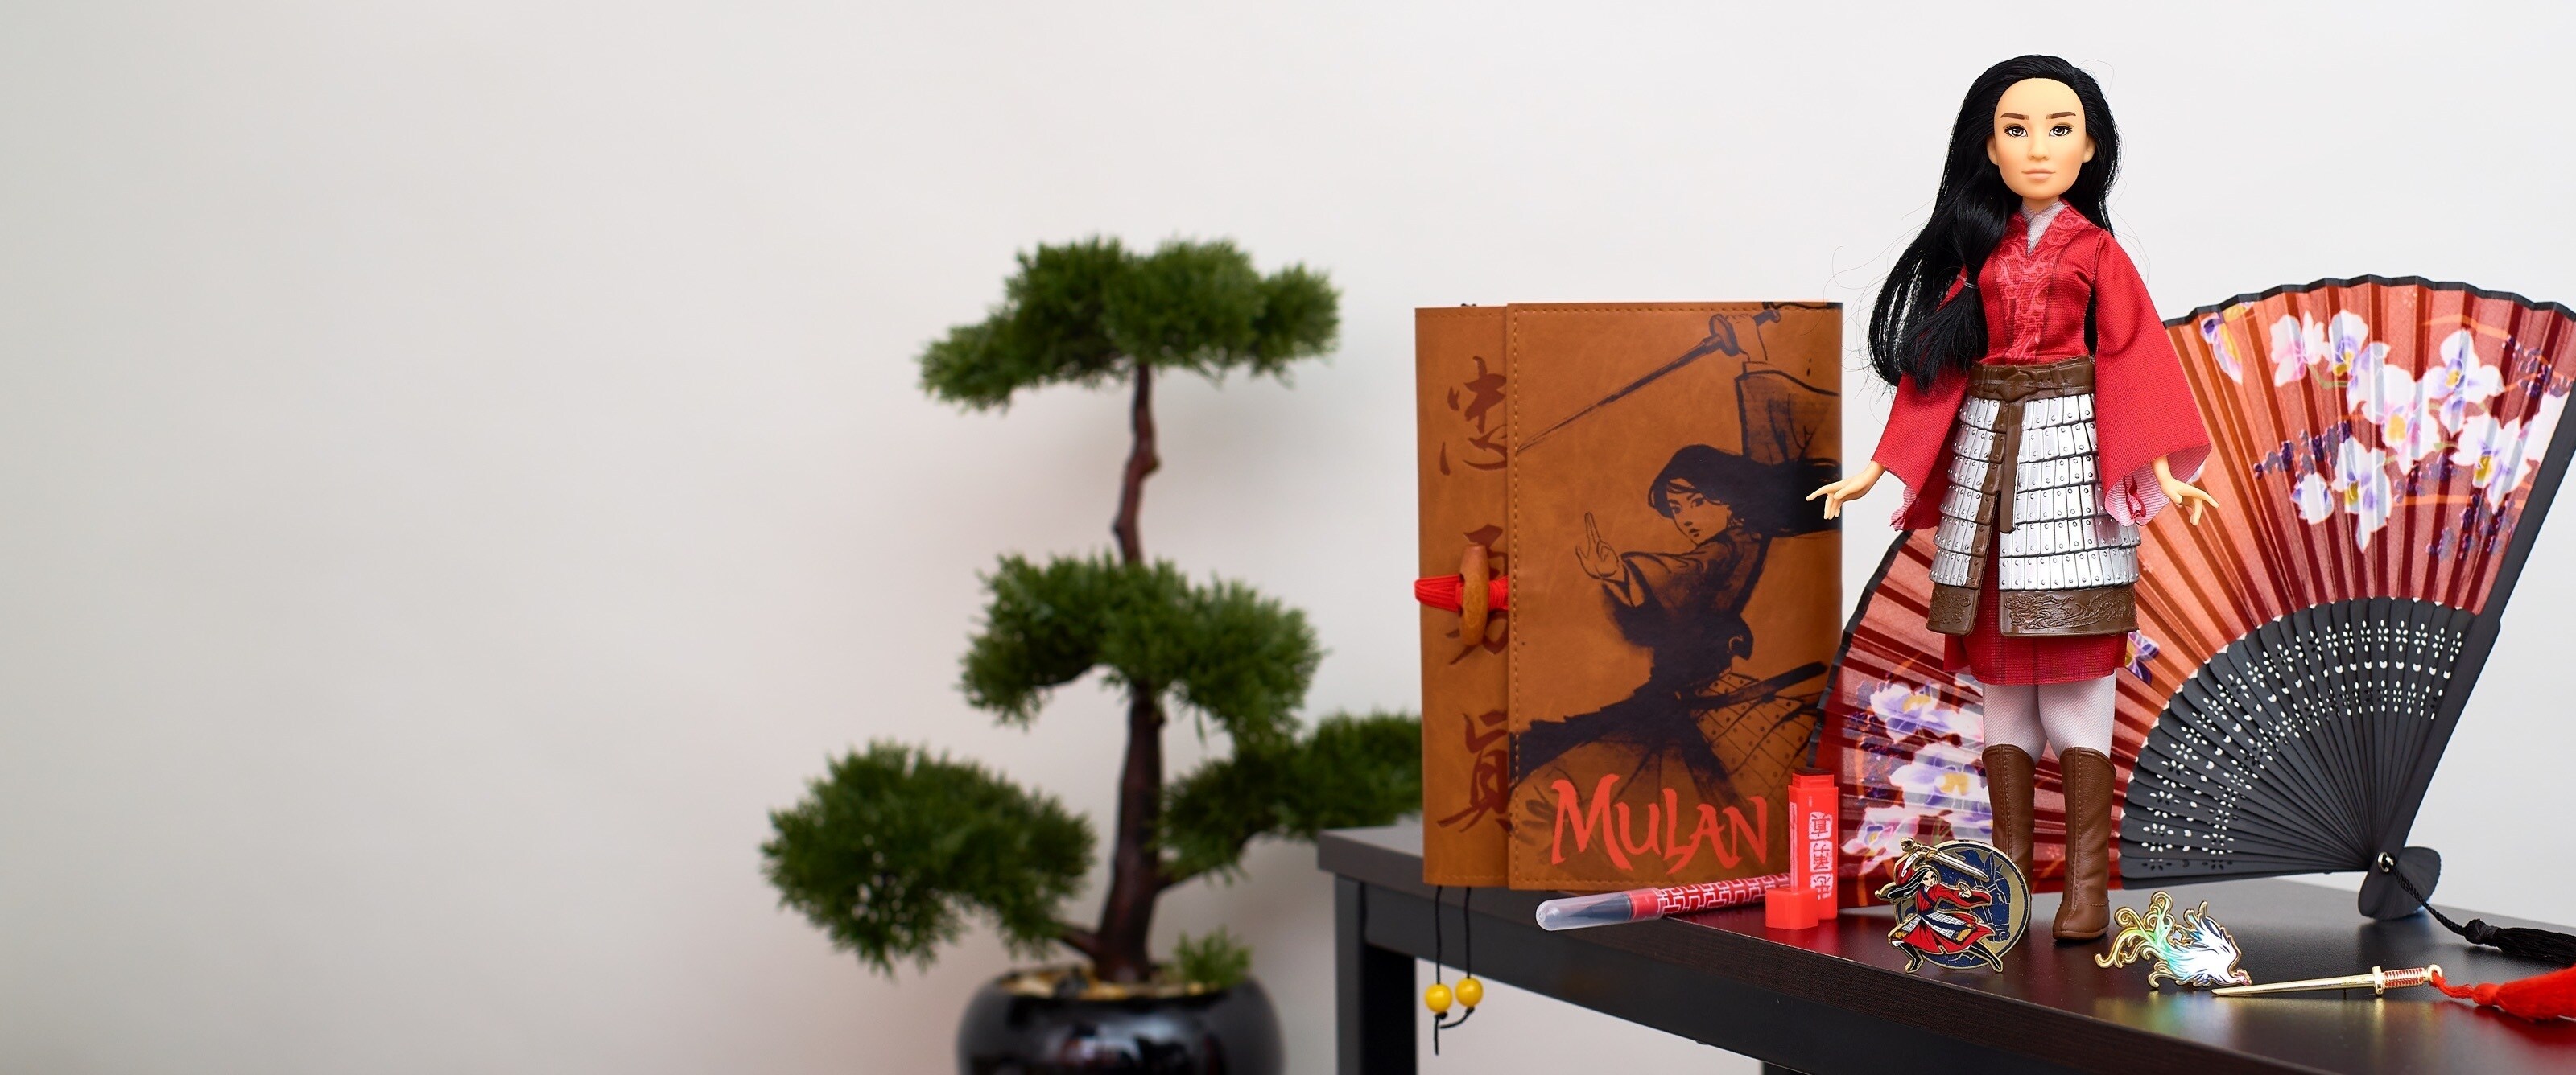 Mulan Gift Guide | SHOP